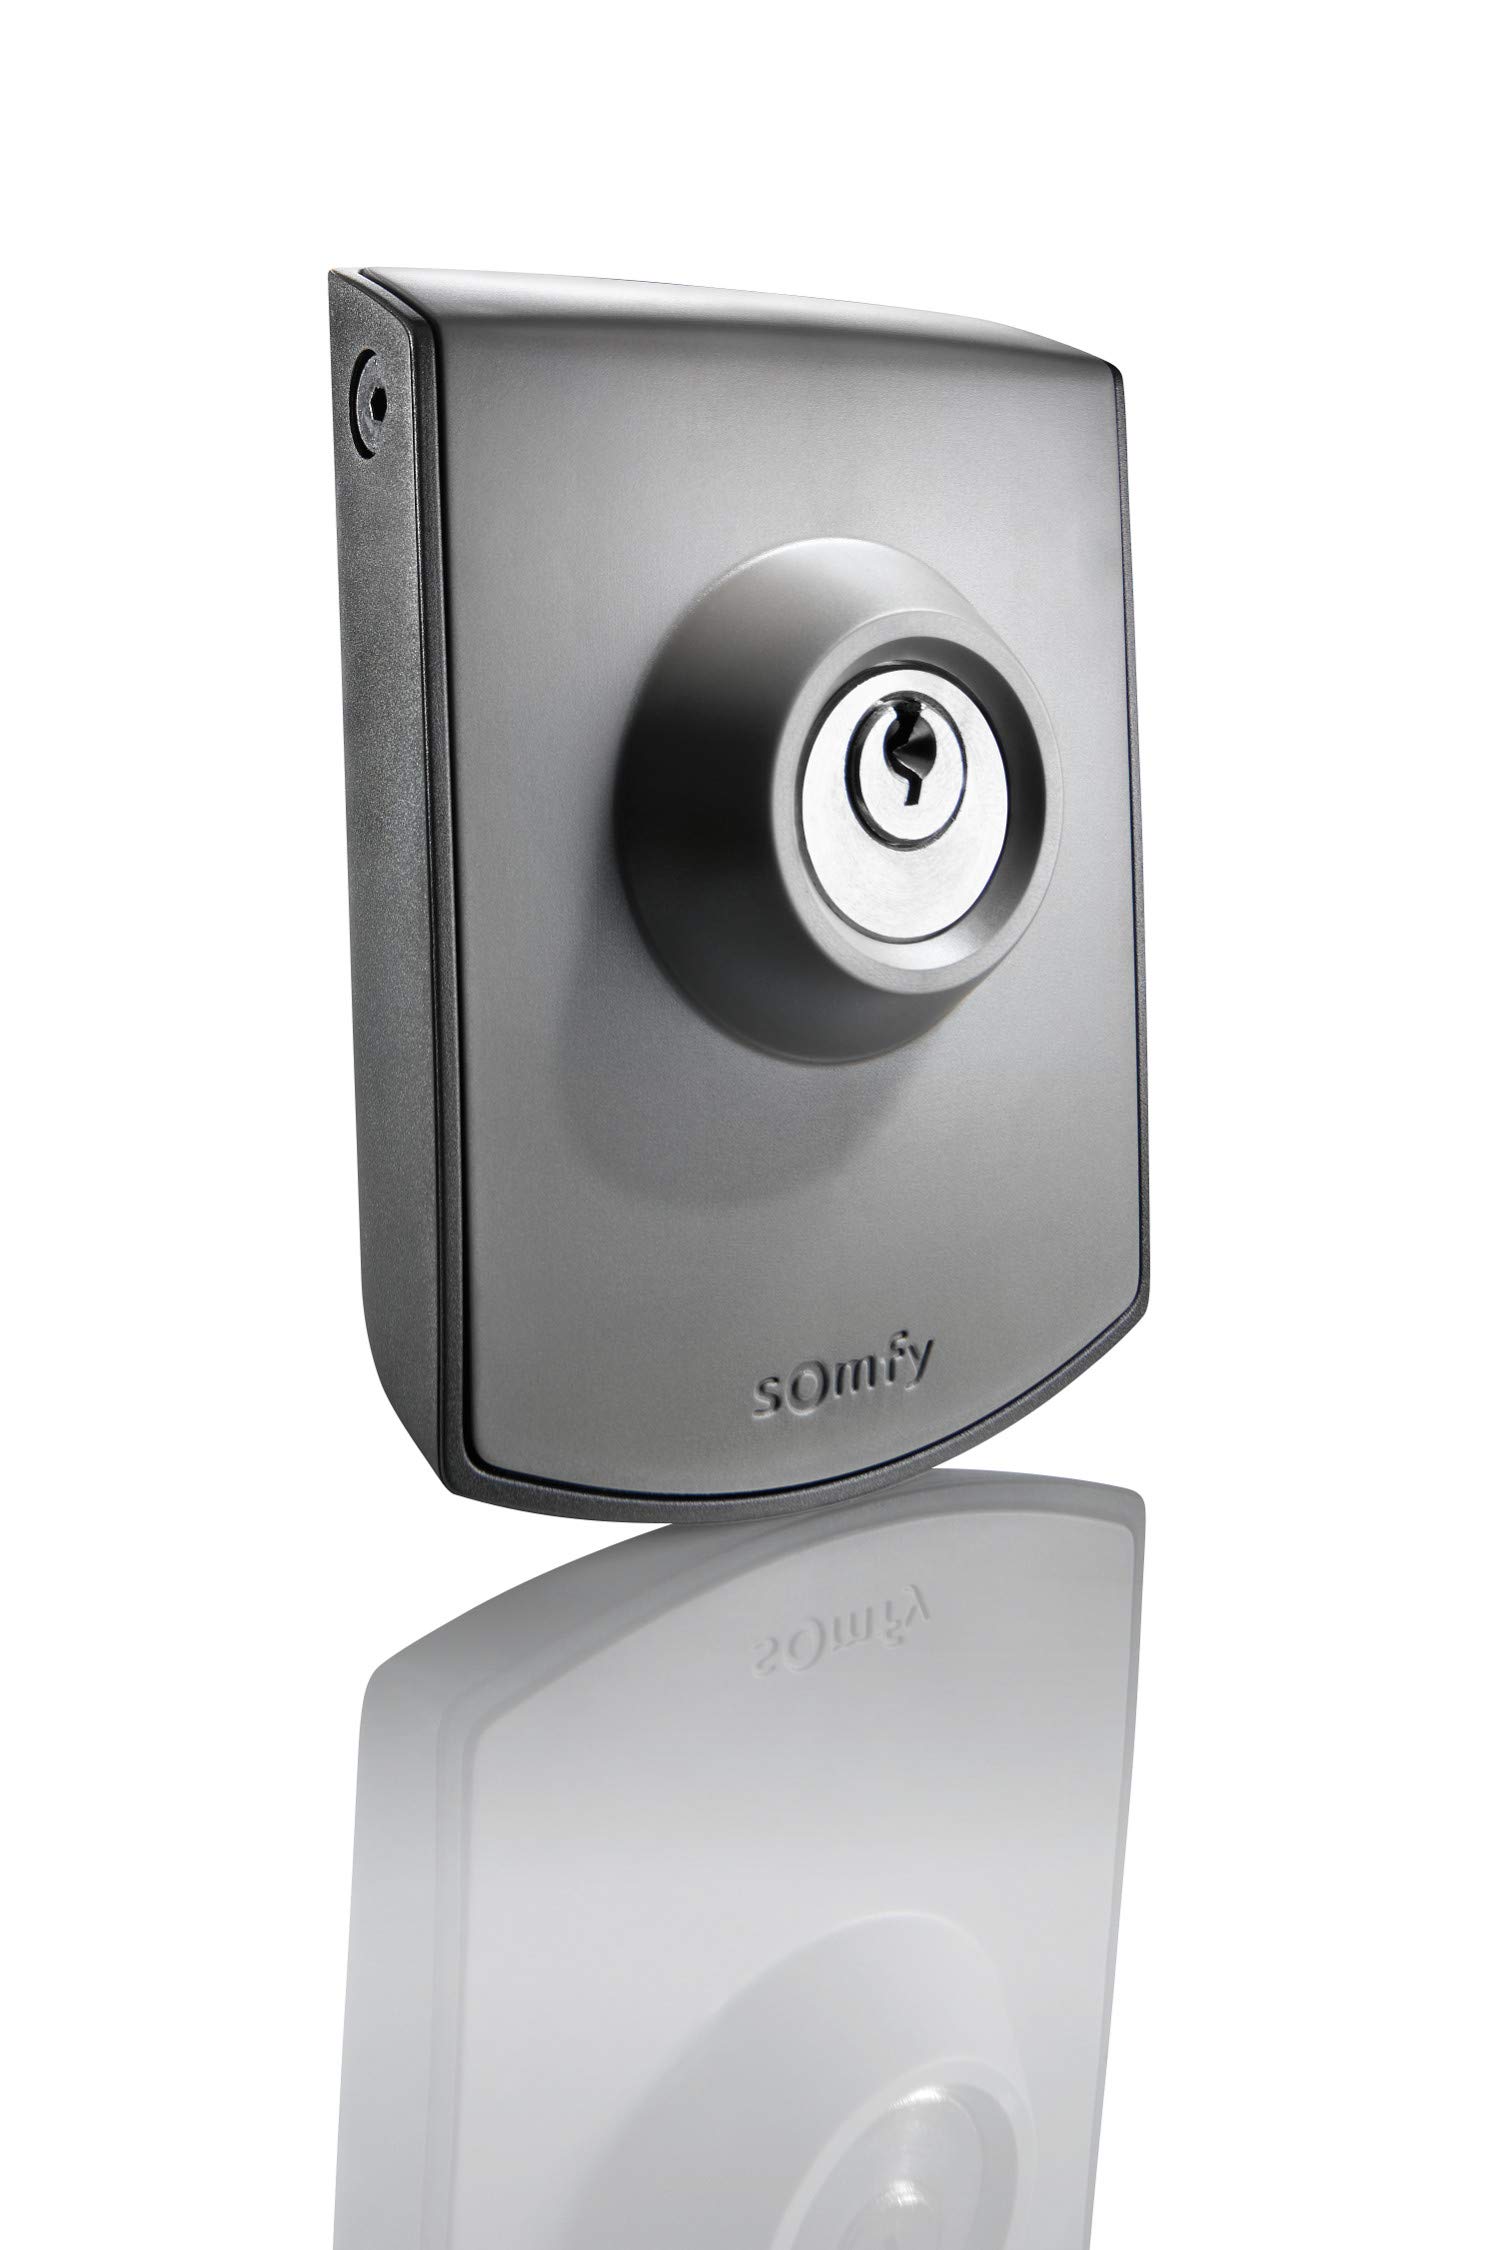 Somfy 2400597 -Schlüsseltaster Aufputz zur Bedienung von Torantrieben, grau